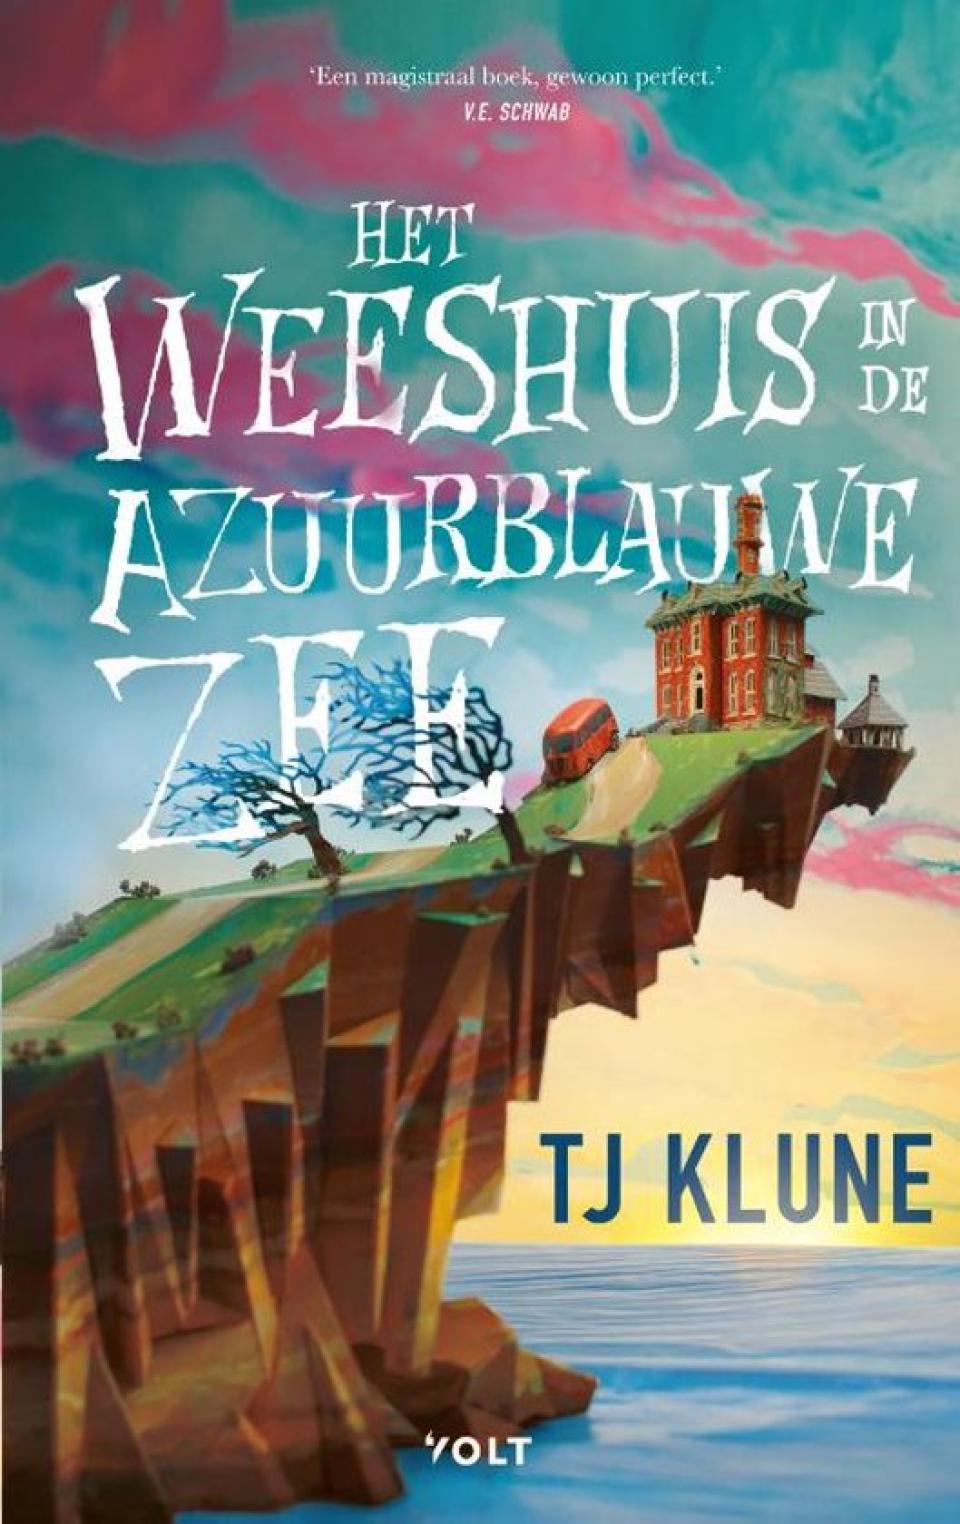 cover boek Het weeshuis in de azuurblauwe zee van TJ Klune